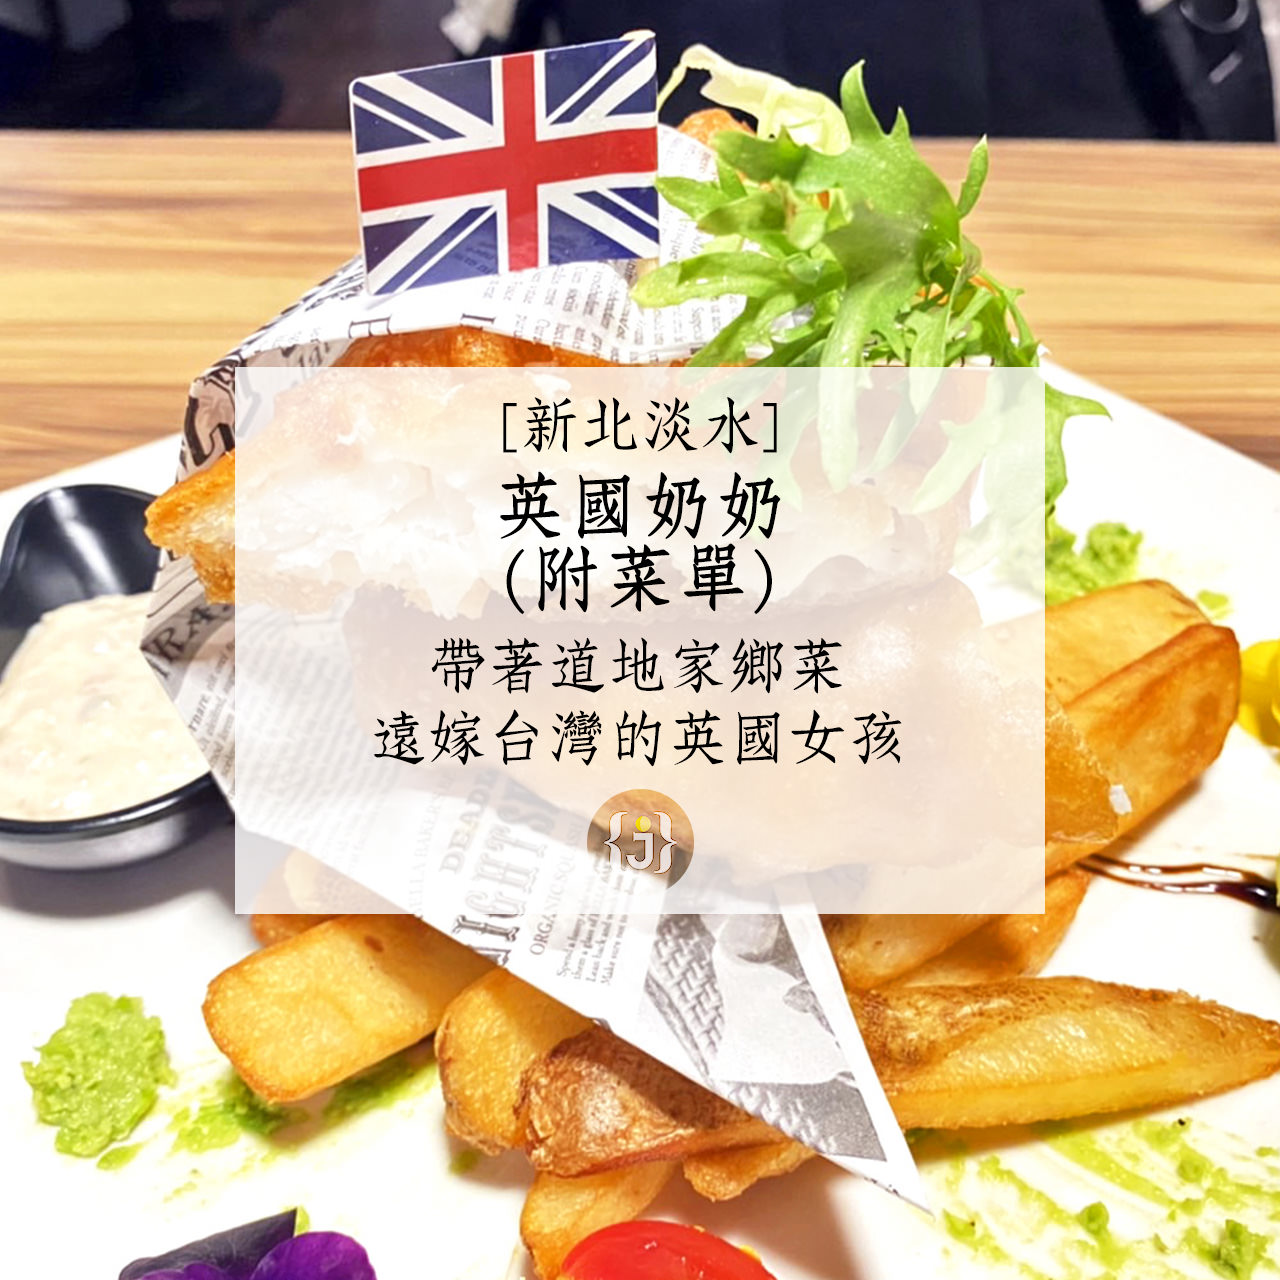 【新北淡水】英國奶奶附菜單帶著道地家鄉菜 遠嫁台灣的英國女孩